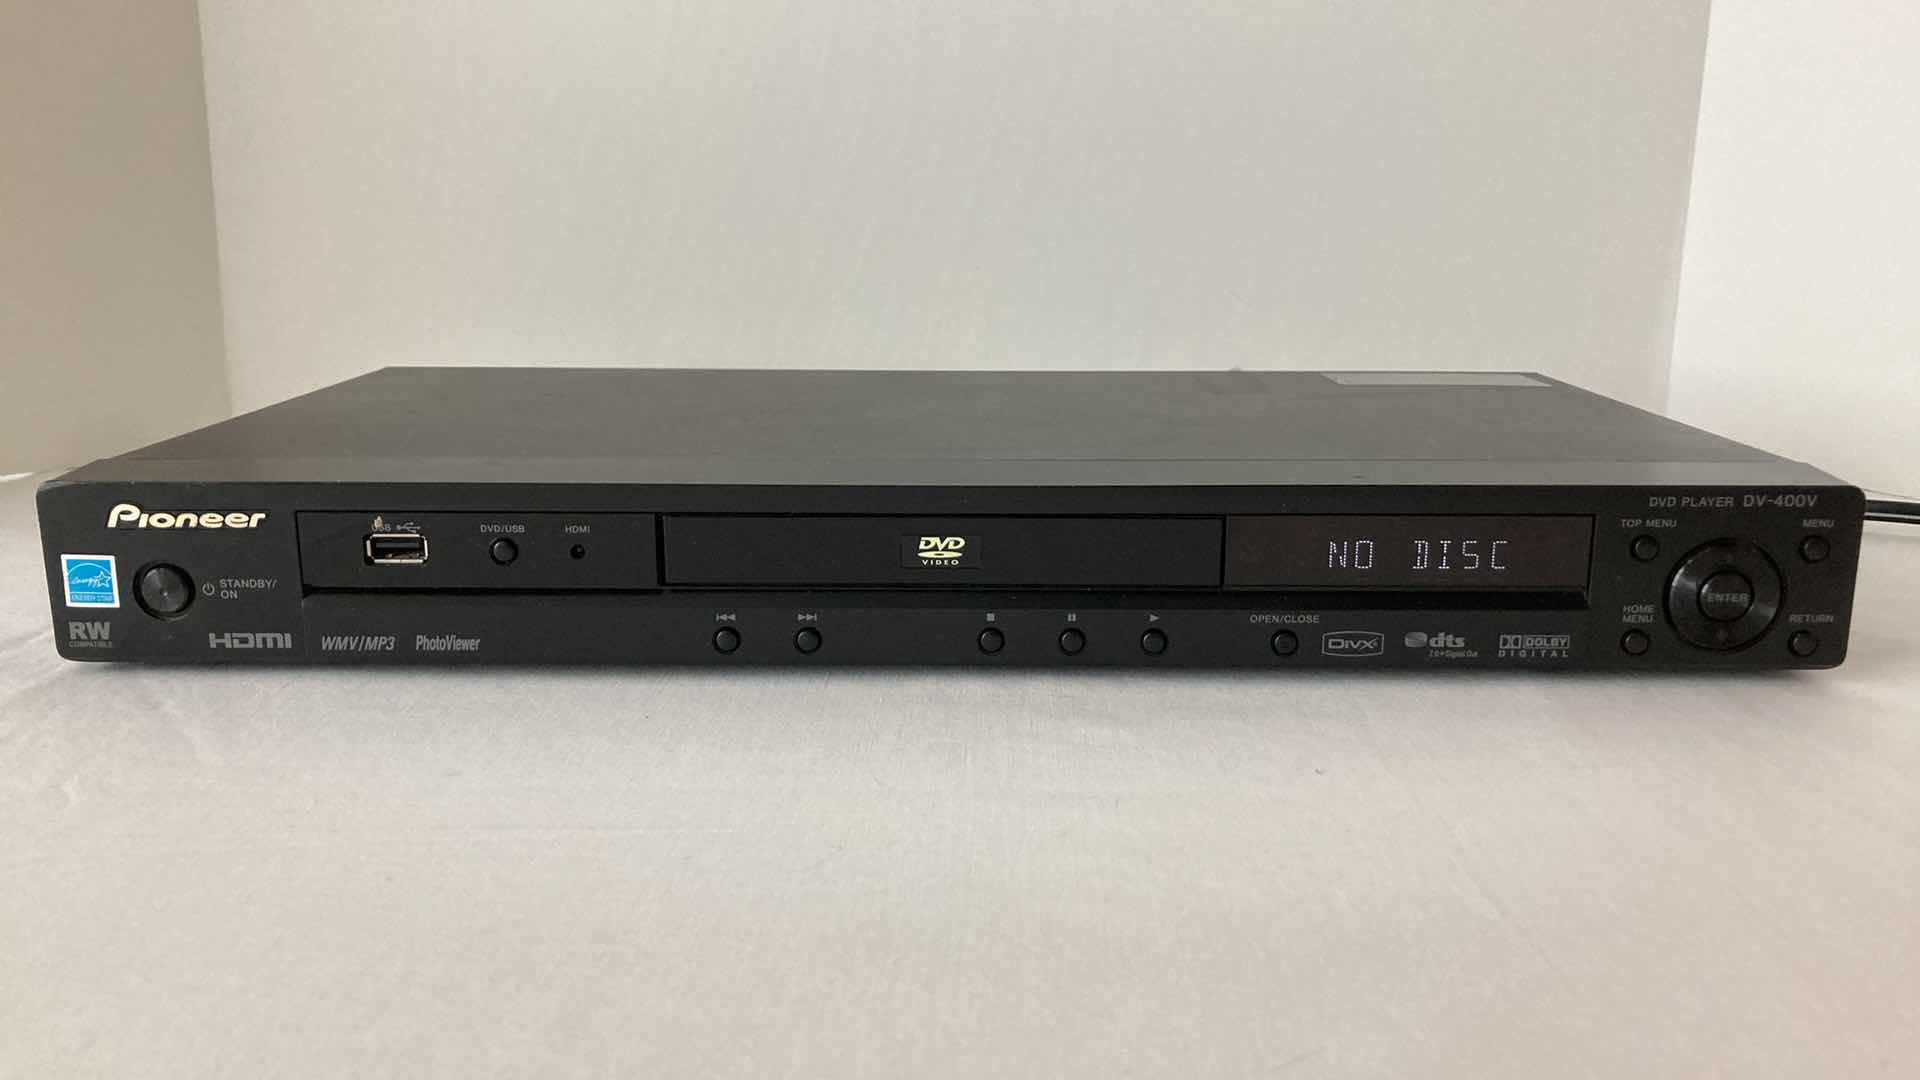 Photo 1 of PIONEER DVD PLAYER MODEL DV-400V-K